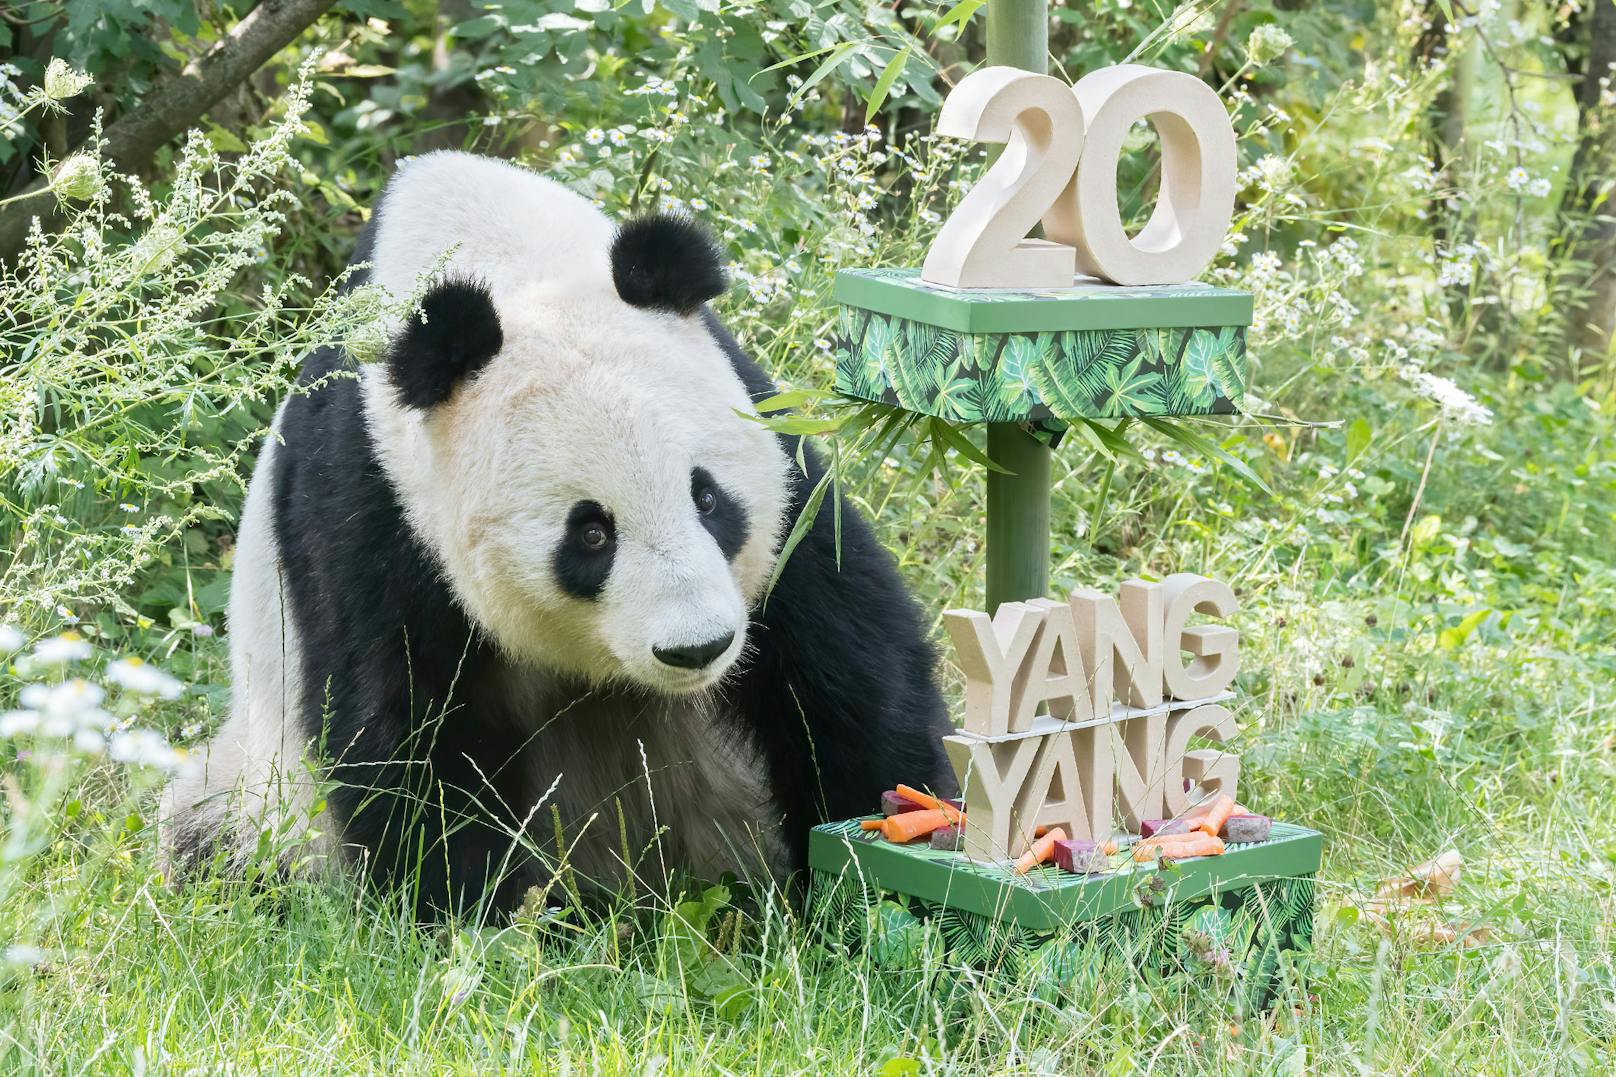 Mahlzeit! Panda-Weibchen Yang Yang feiert am 10. August ihren 20. Geburtstag mit einer besonderen Torte.